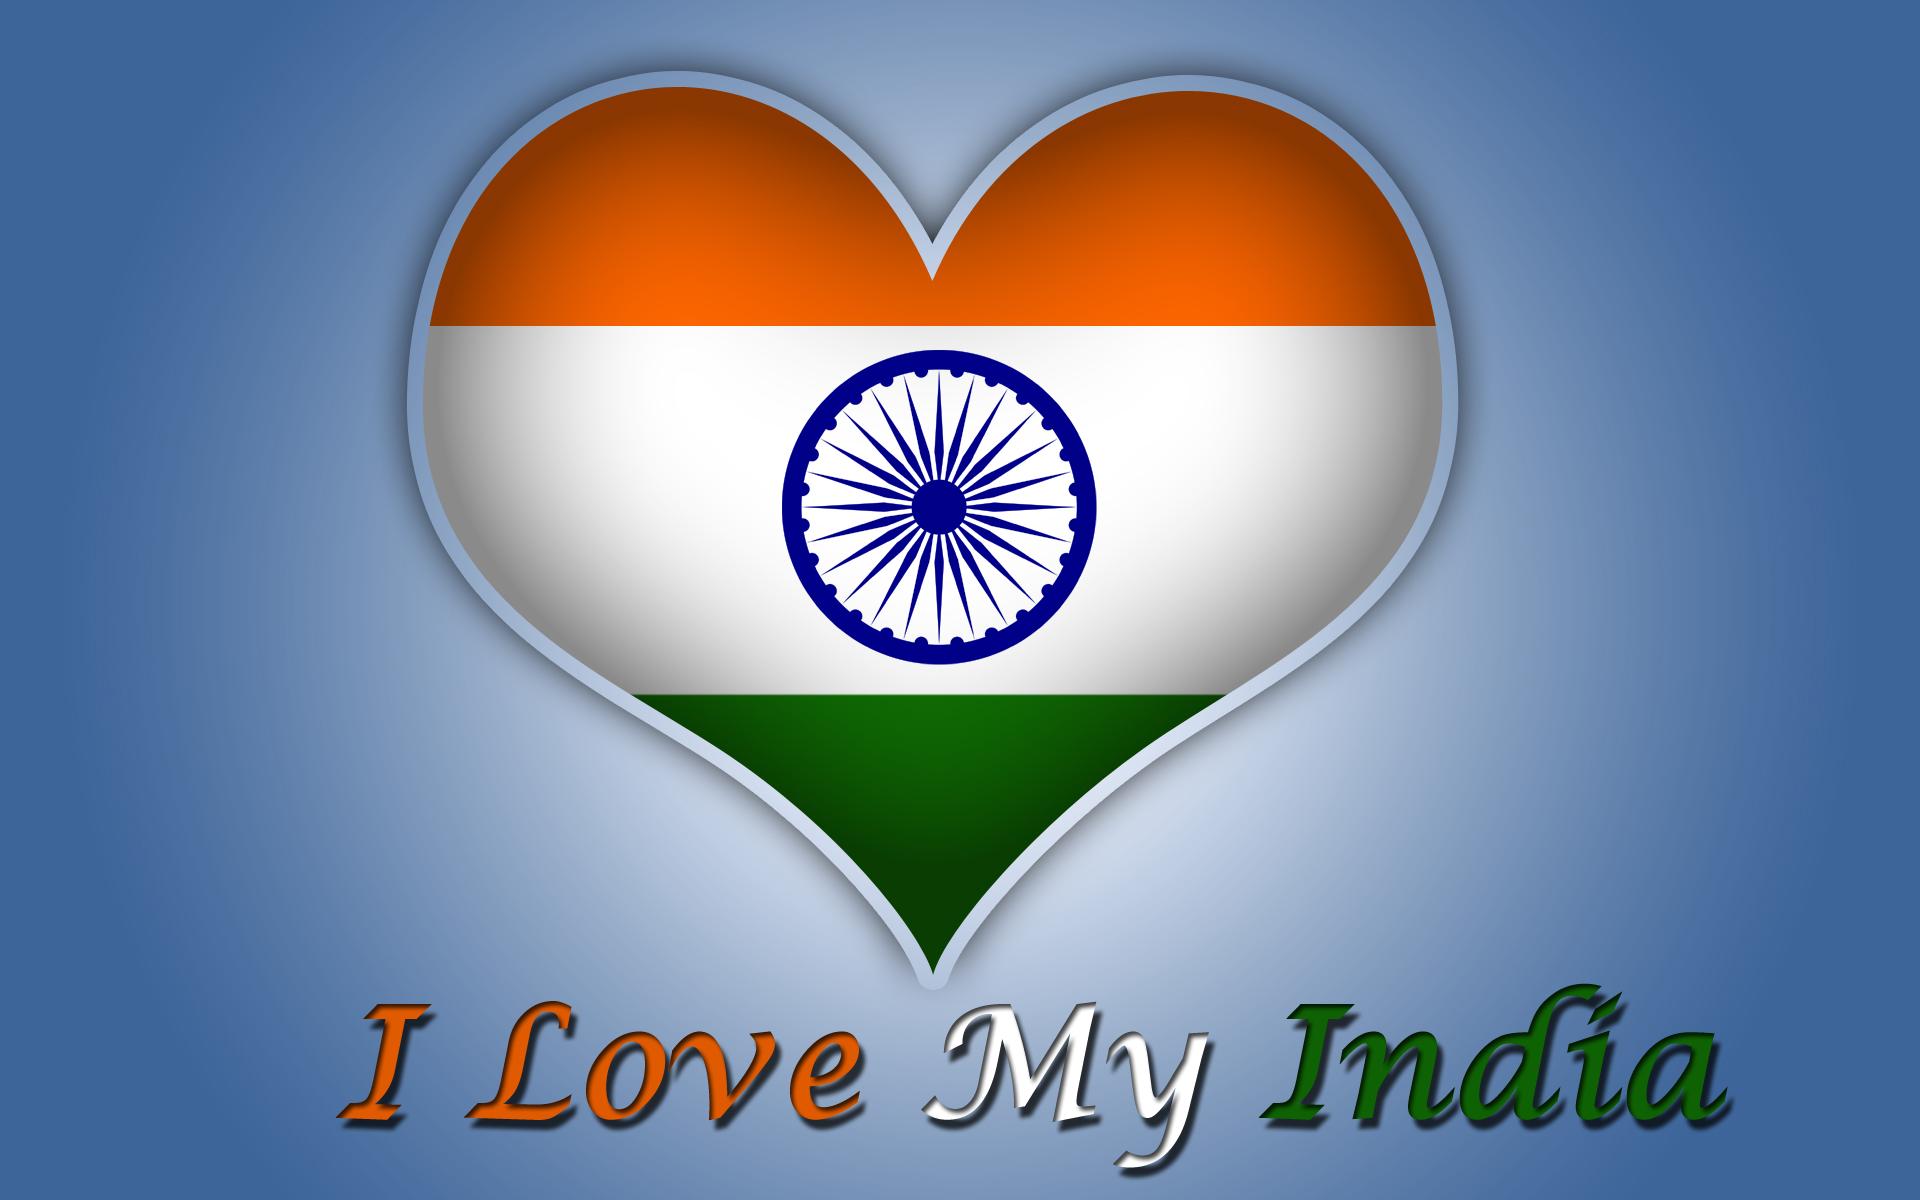 インドの旗の壁紙,国旗,心臓,シンボル,愛,グラフィックス